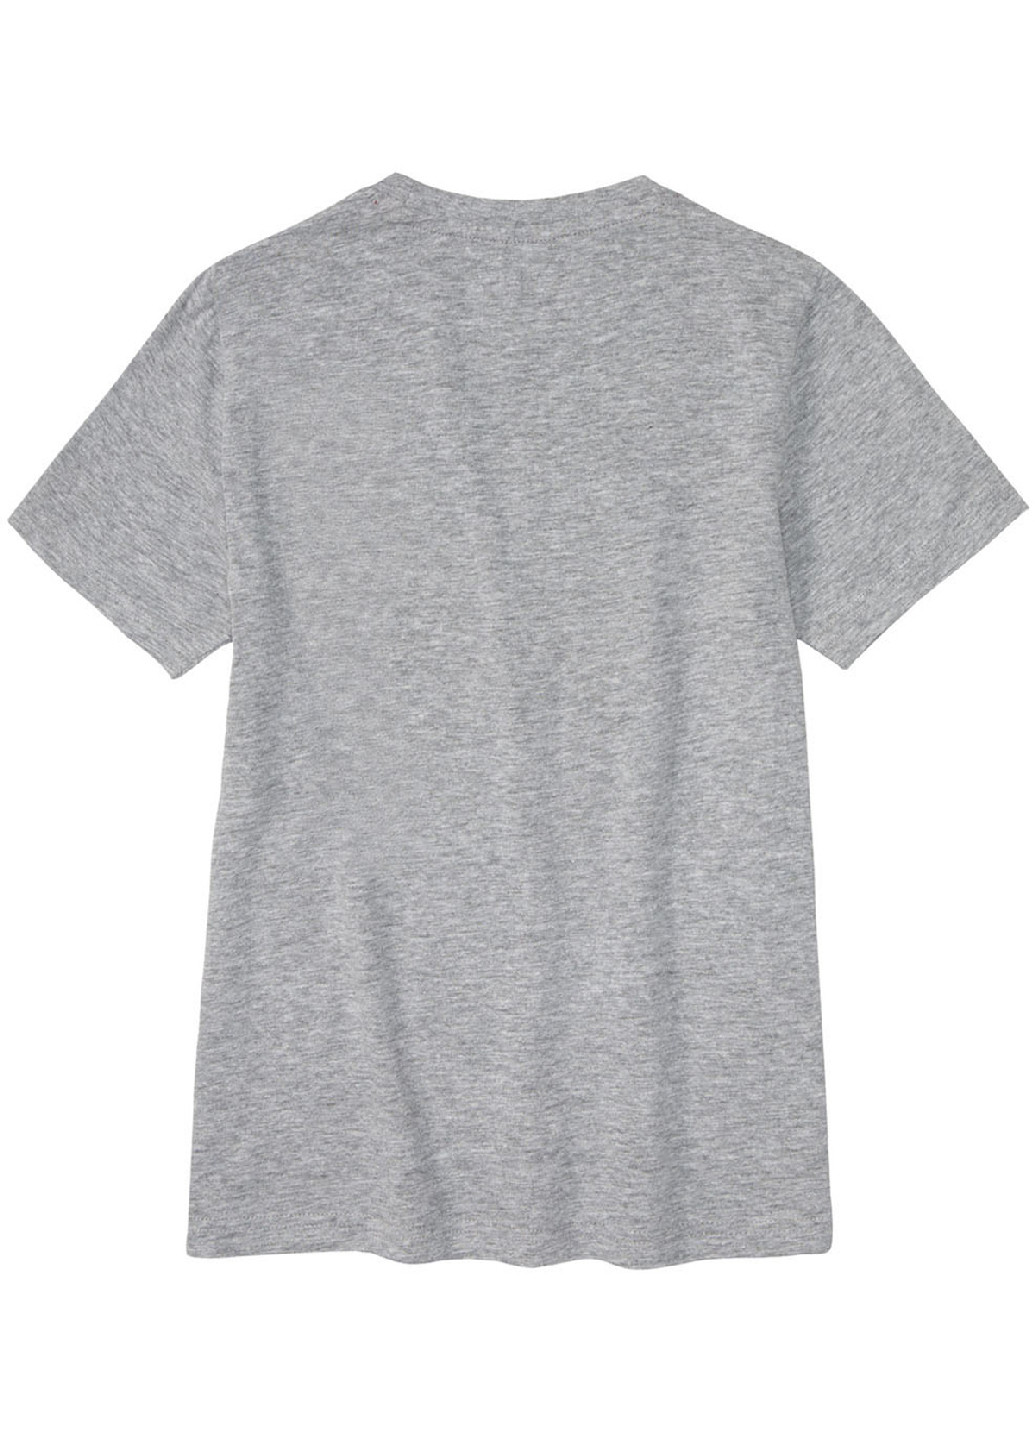 Комбинированная всесезон пижама (футболка, шорты) футболка + шорты Pepperts